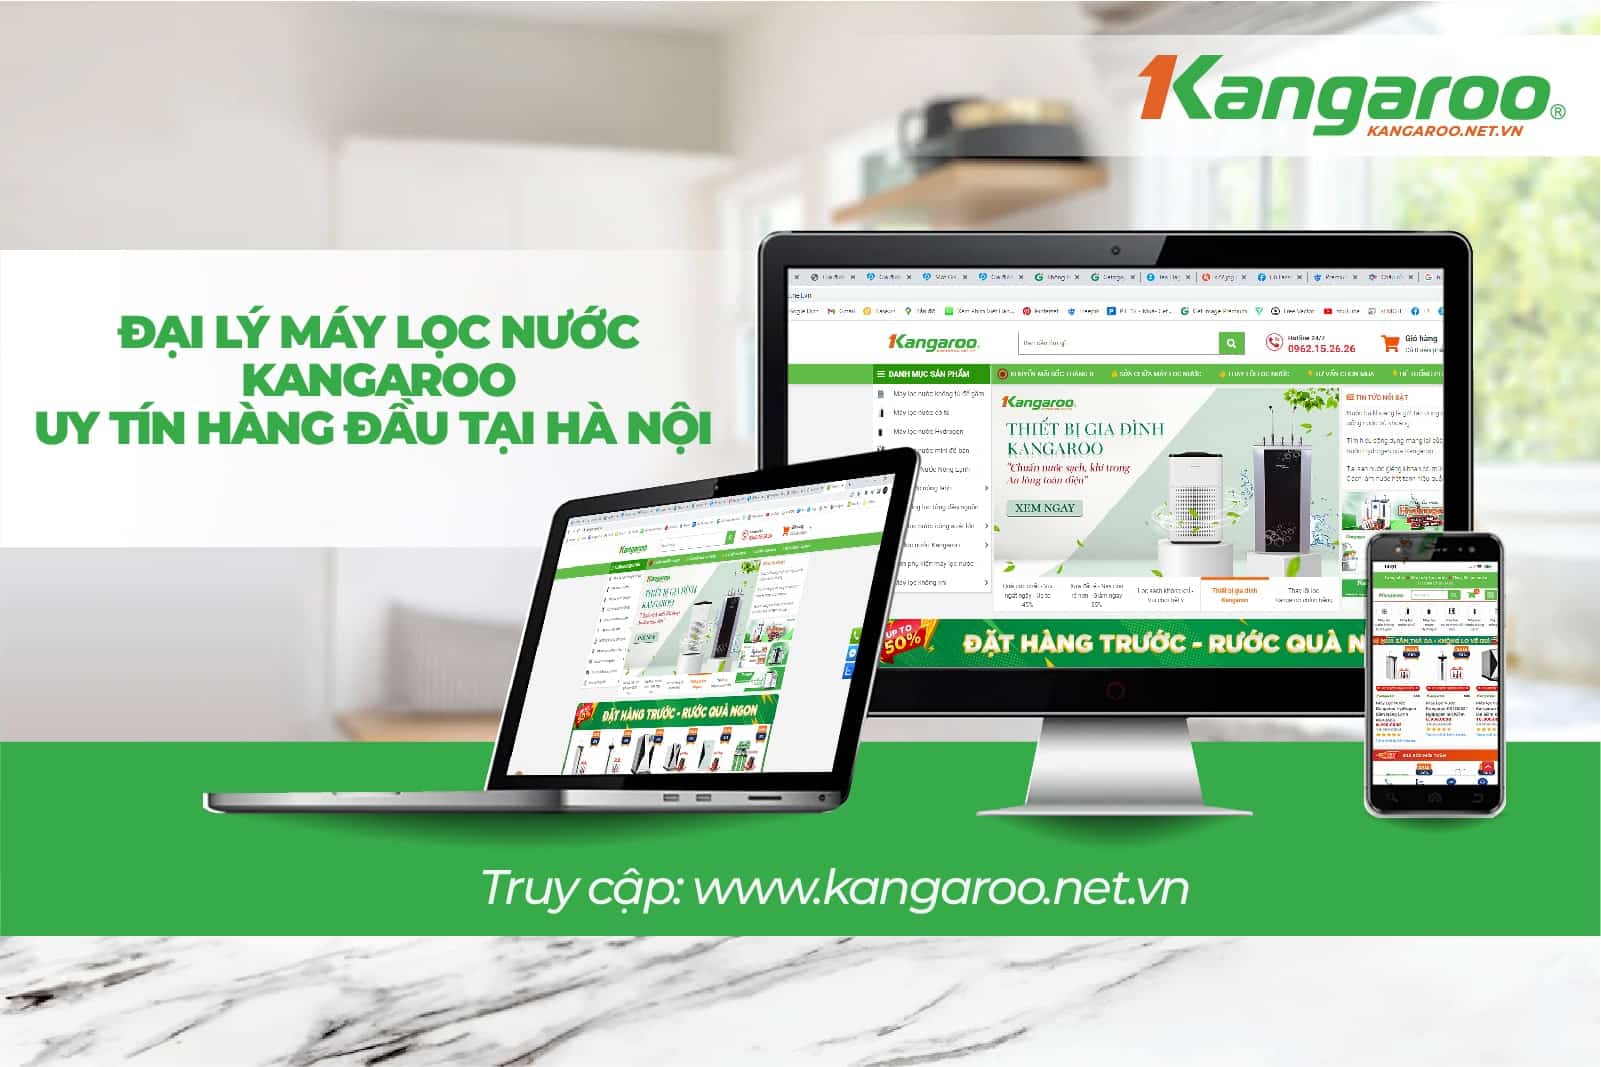 Kangaroo.net.vn - Địa chỉ mua cây nước nóng lạnh KG46 chính hãng giá tốt nhất